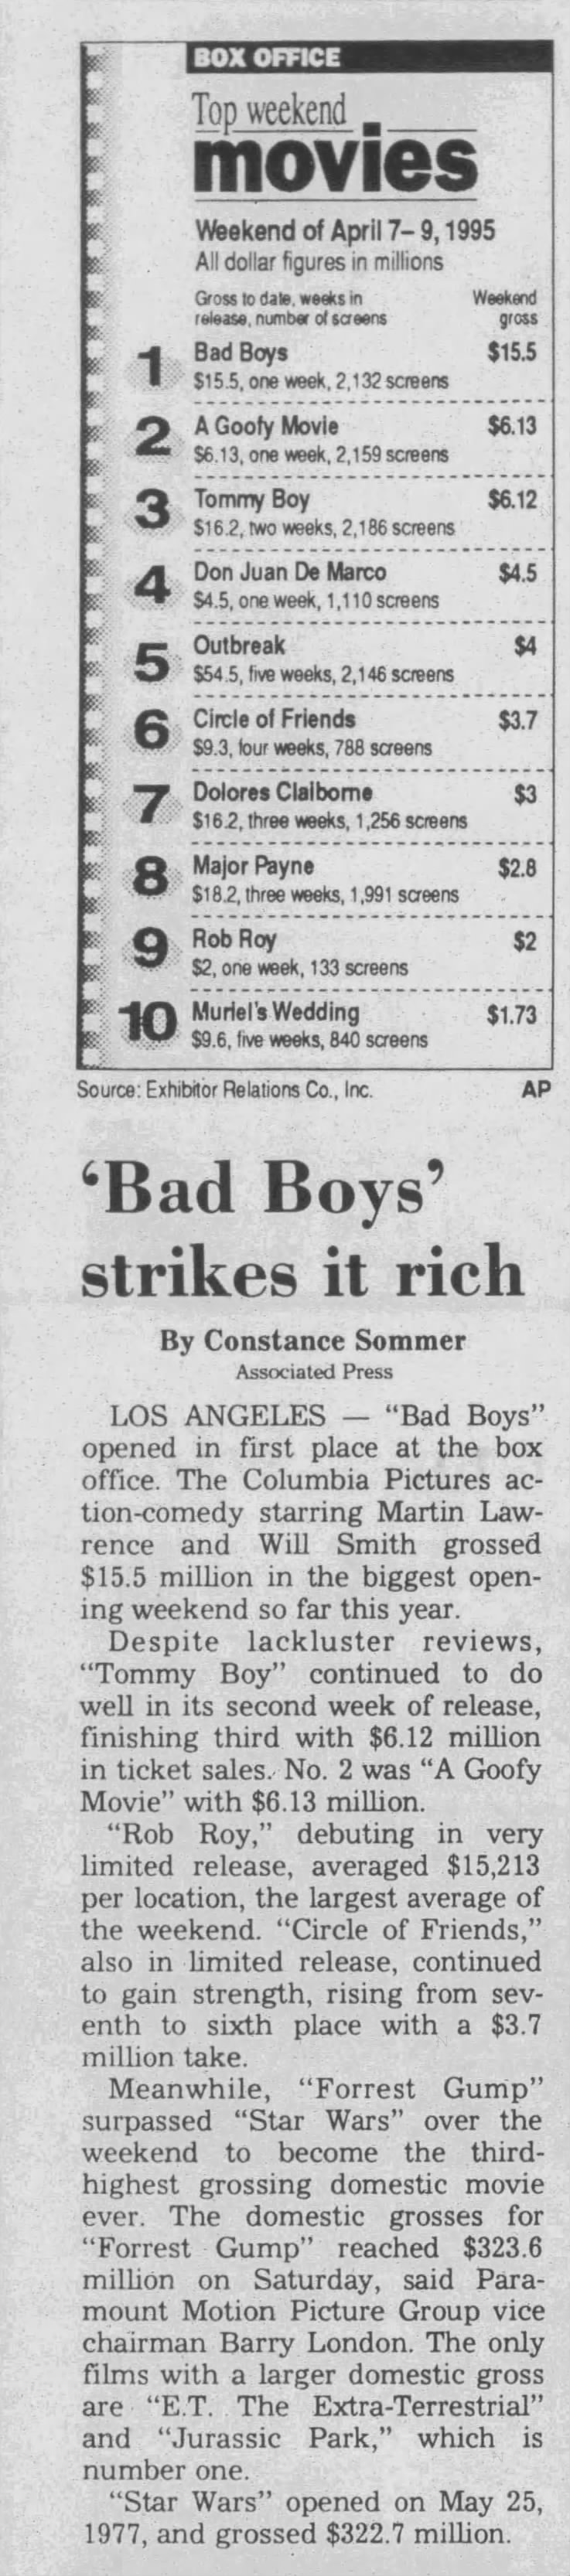 'Bad Boys' strikes it rich